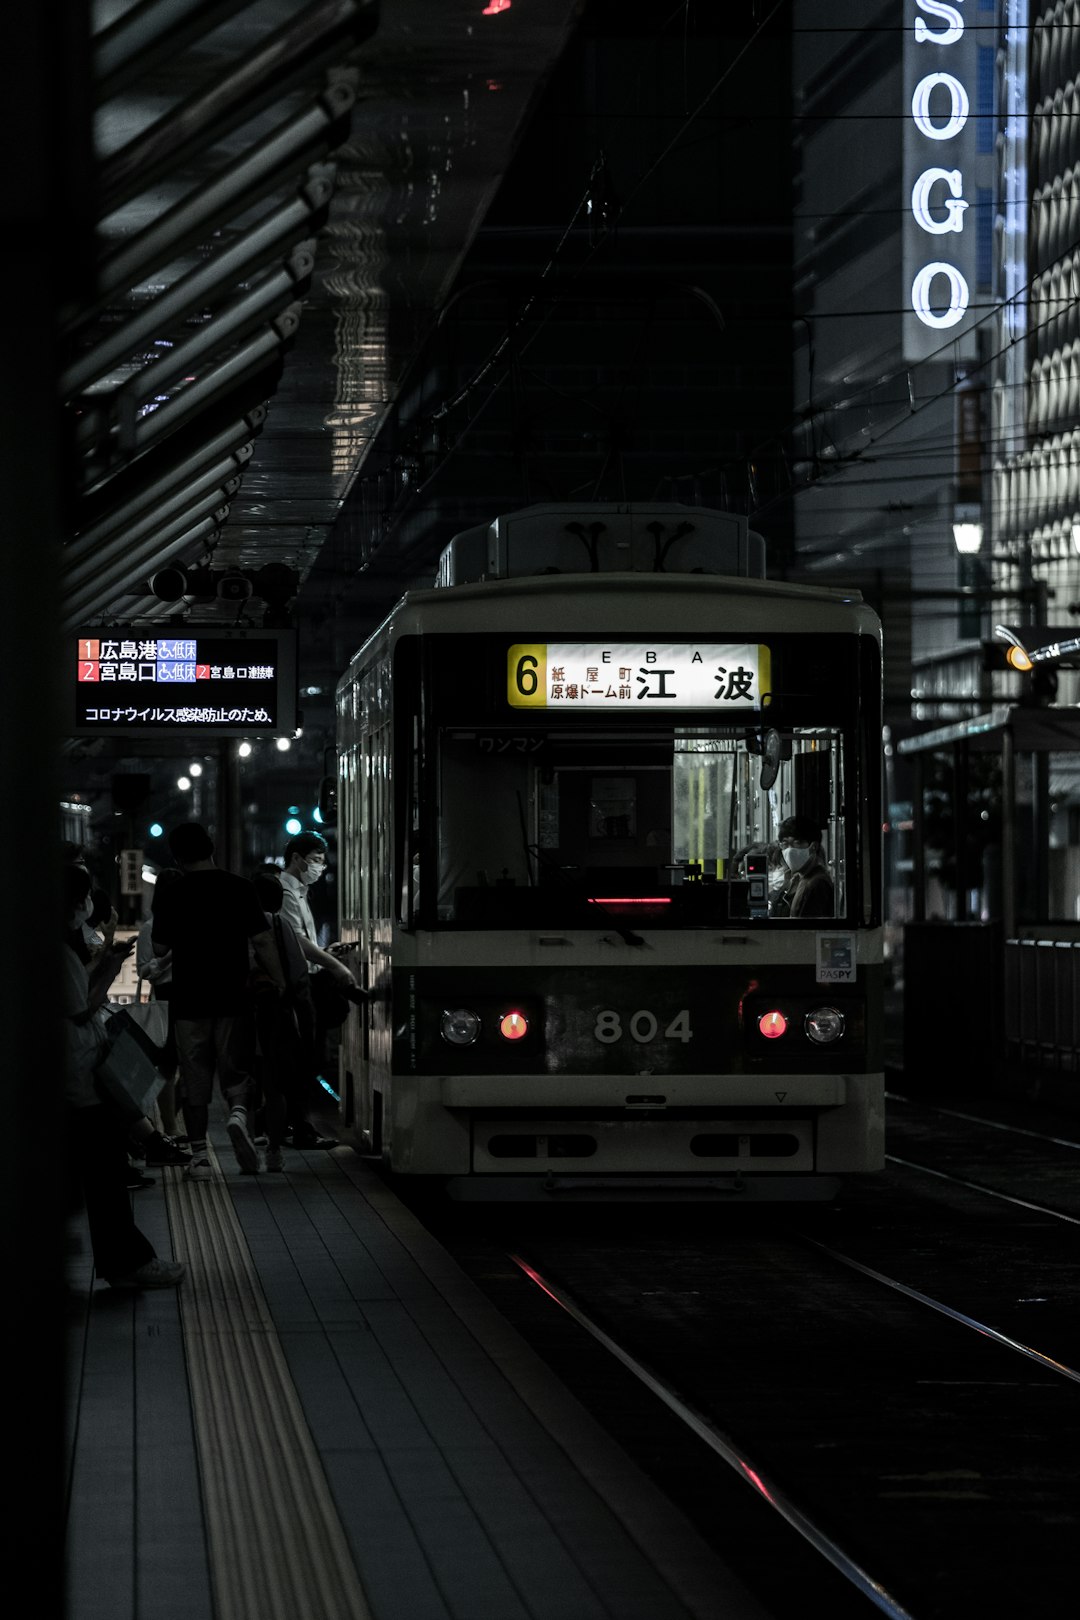 people walking on sidewalk near white train during night time